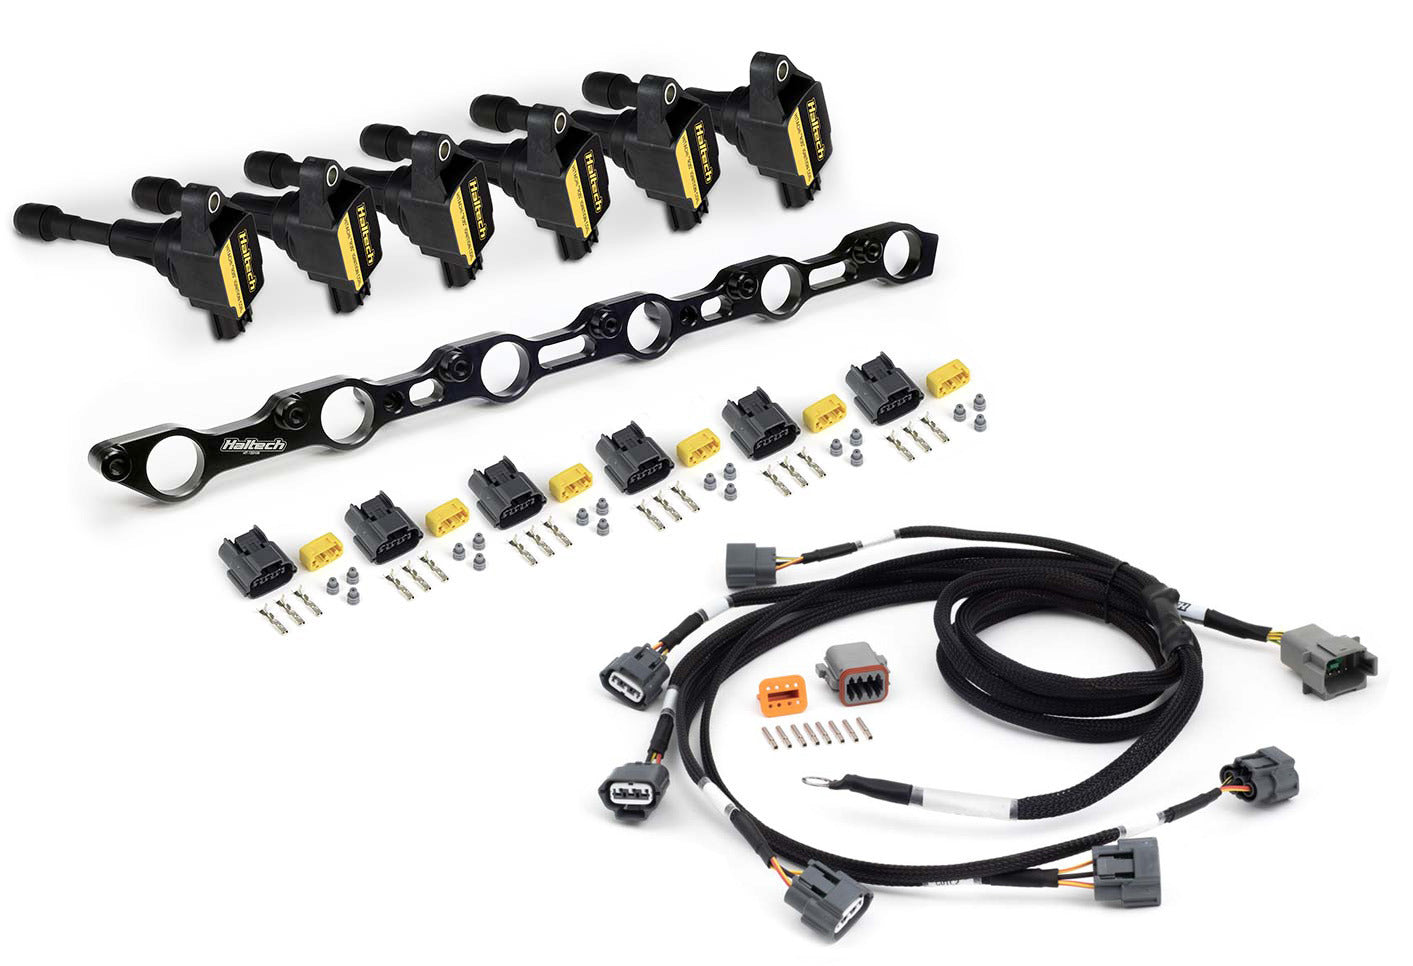 Haltech R35 Coil Conversion Kit for Toyota JZ- Incls bracket, coils, connectors, harness - HT-120201